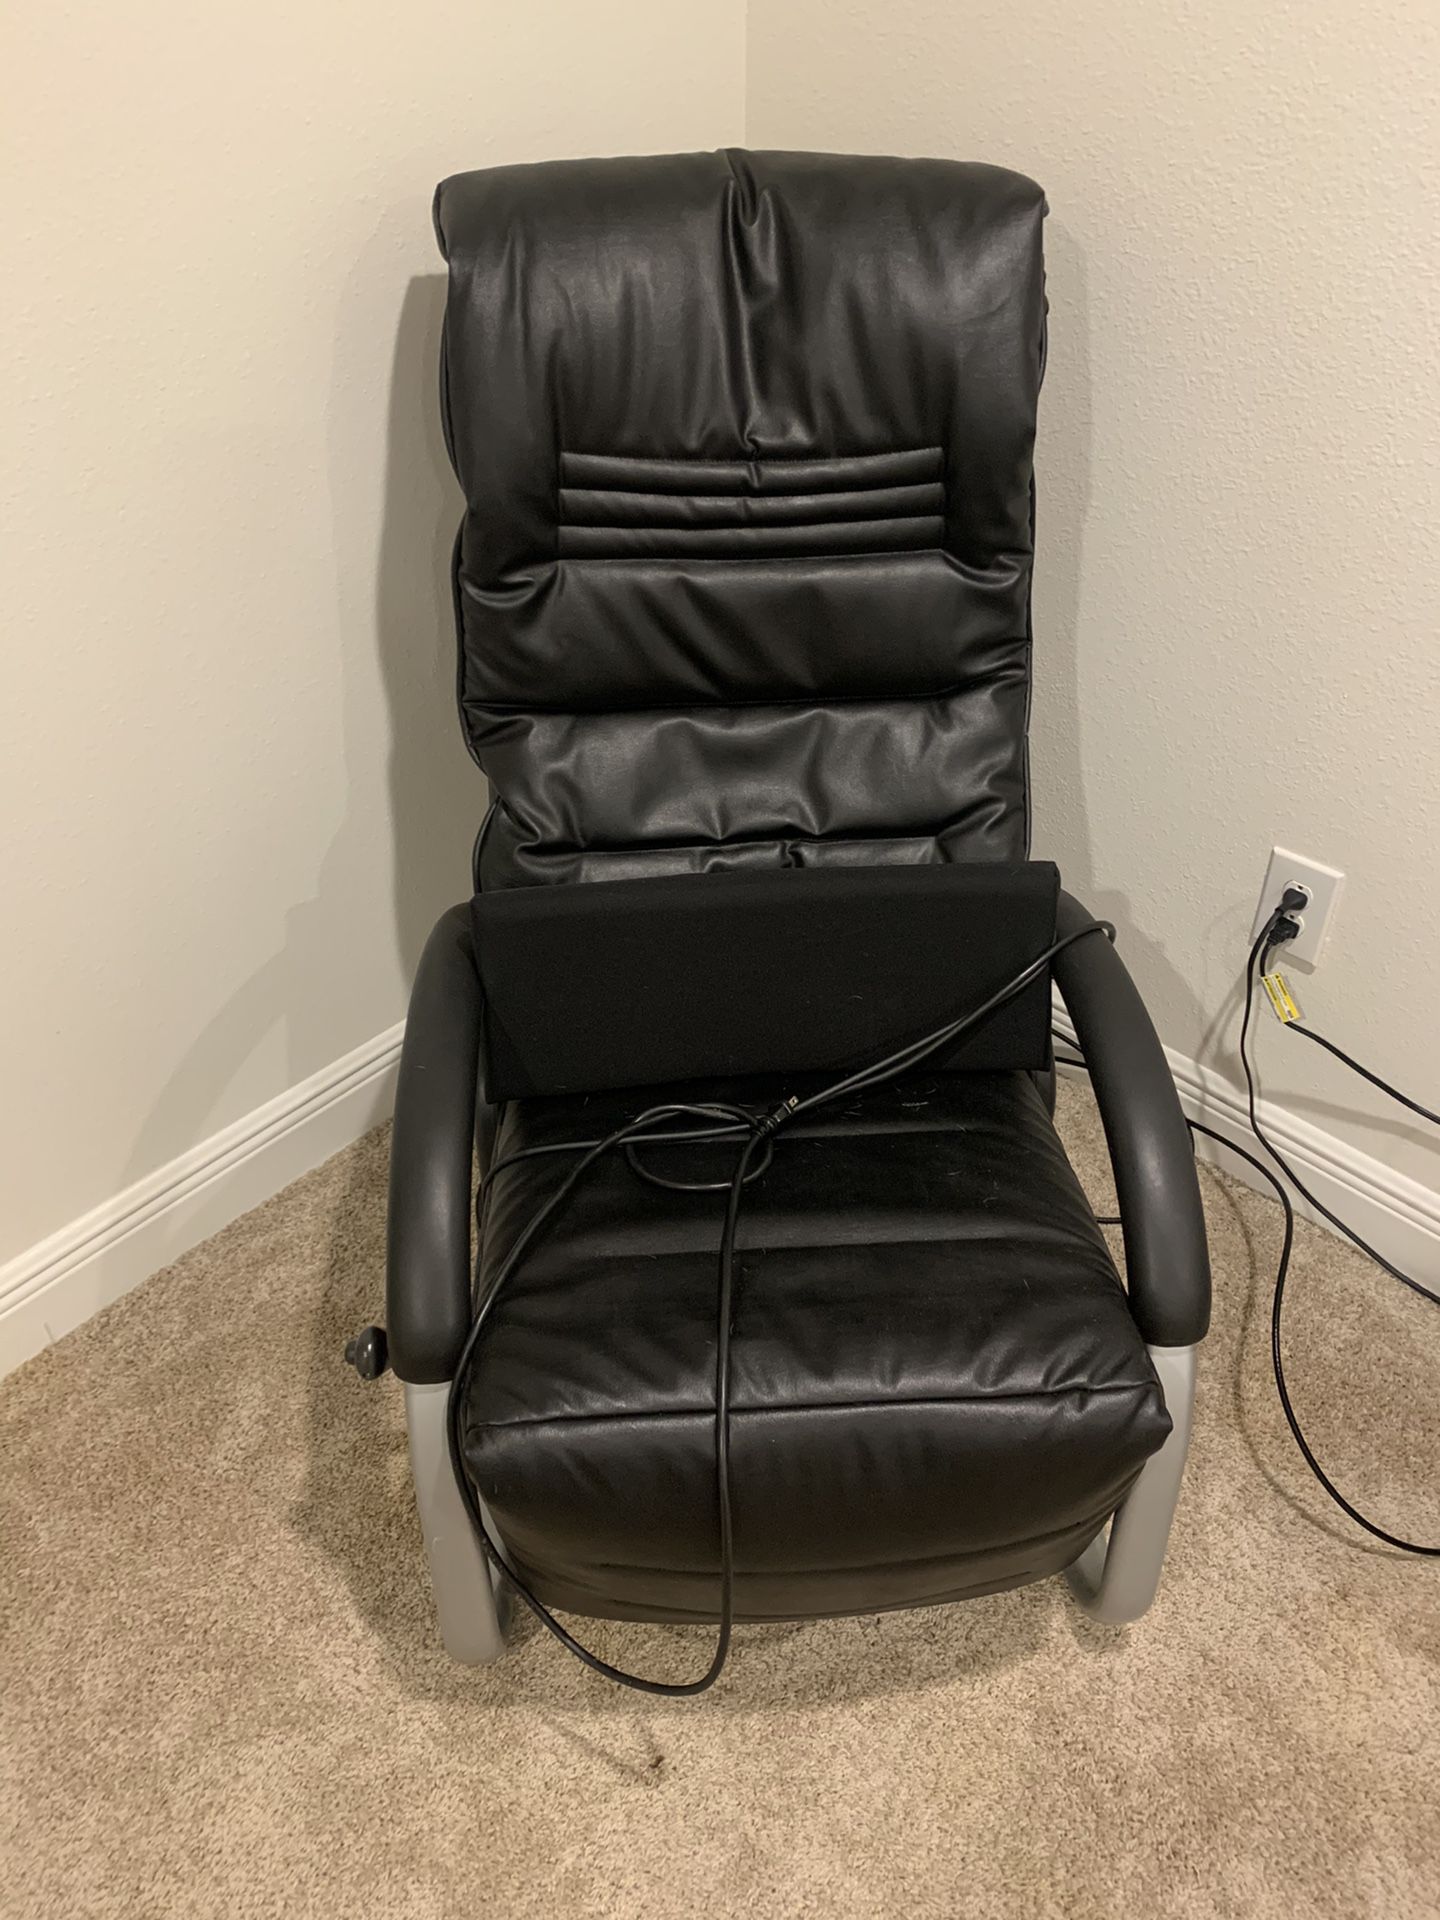 Free Panasonic chair